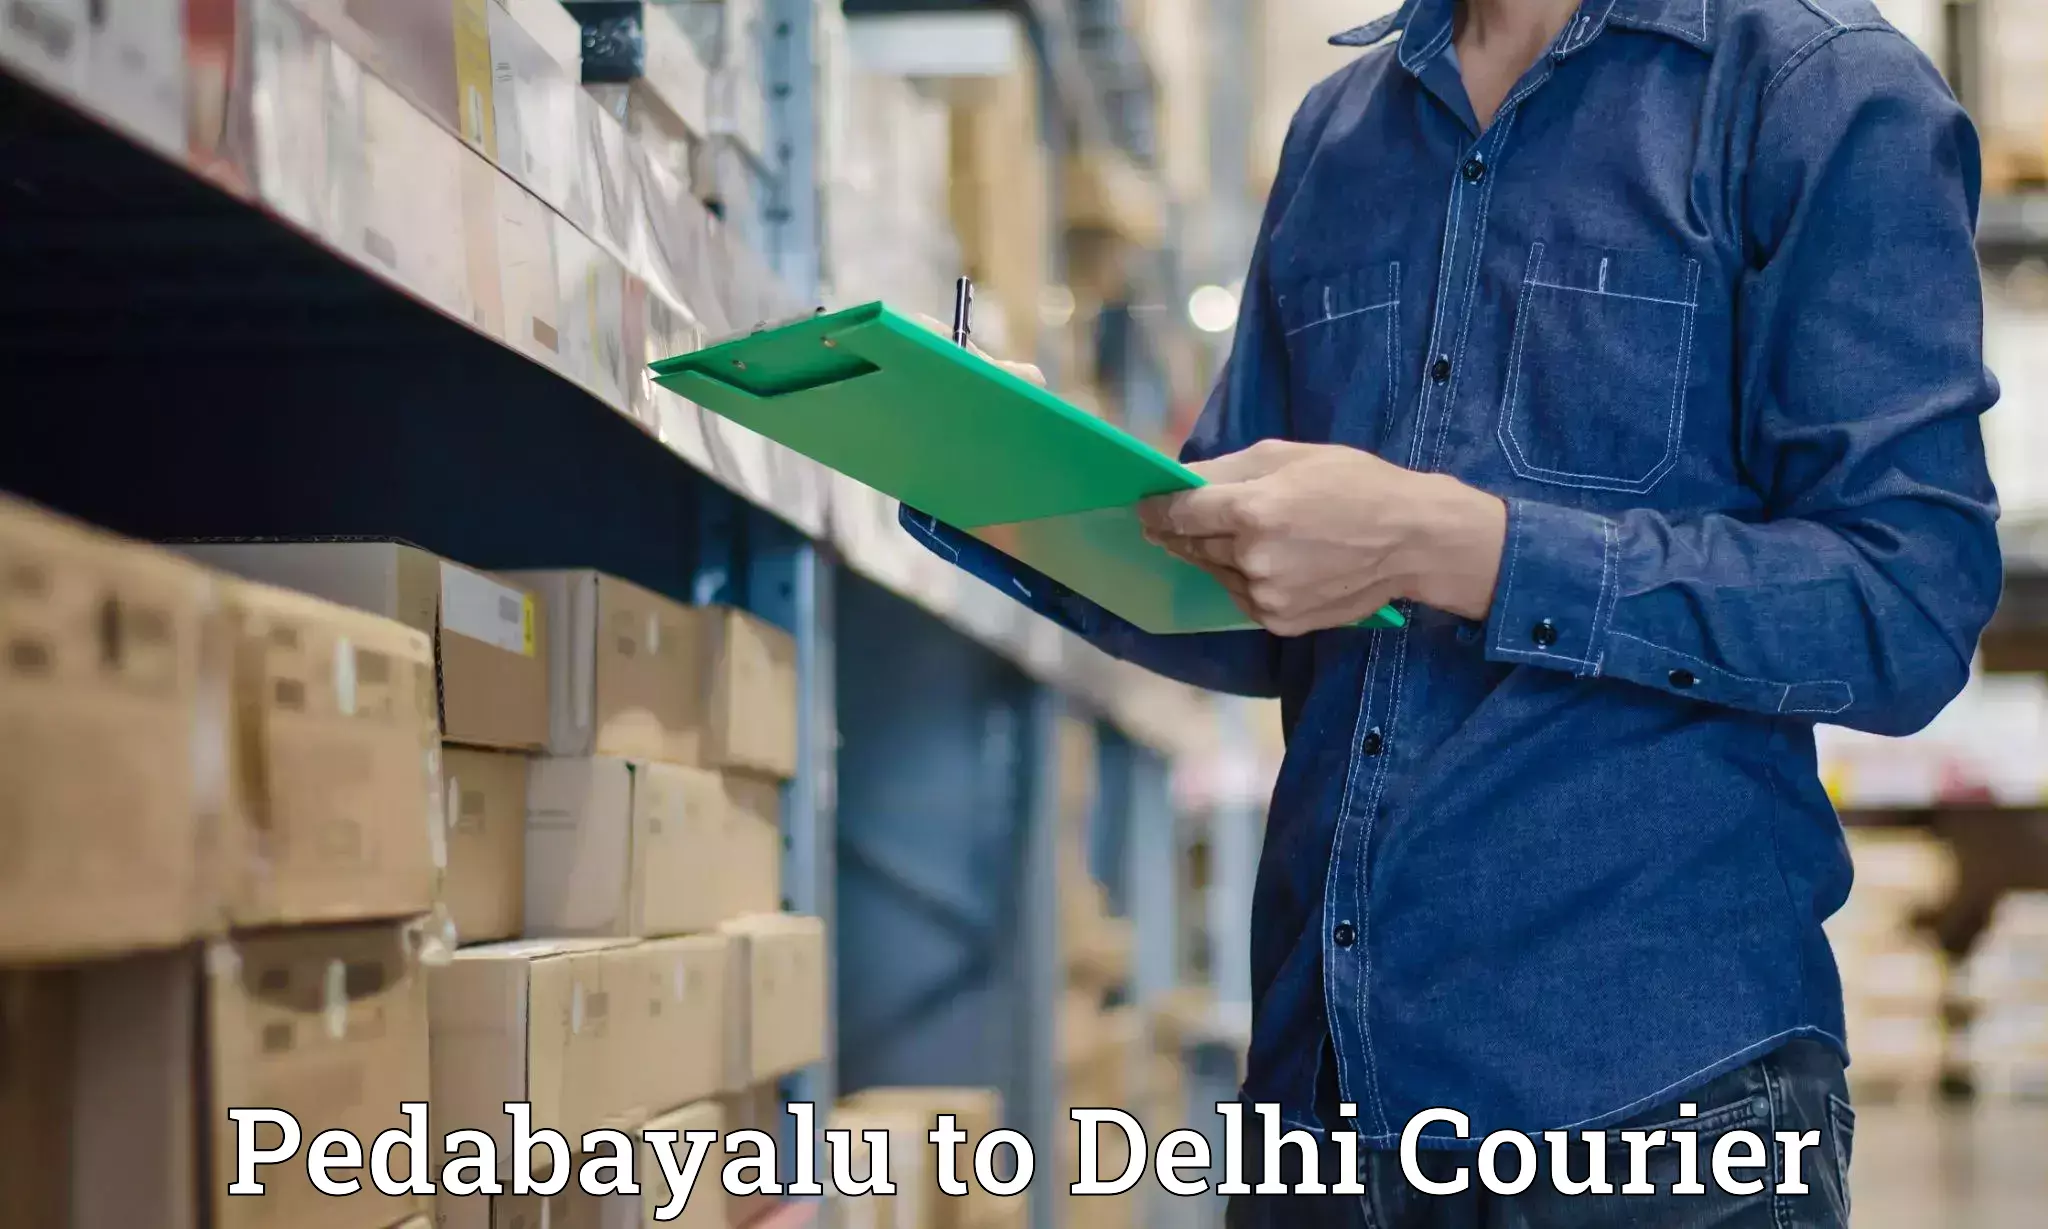 Heavy parcel delivery Pedabayalu to Jawaharlal Nehru University New Delhi